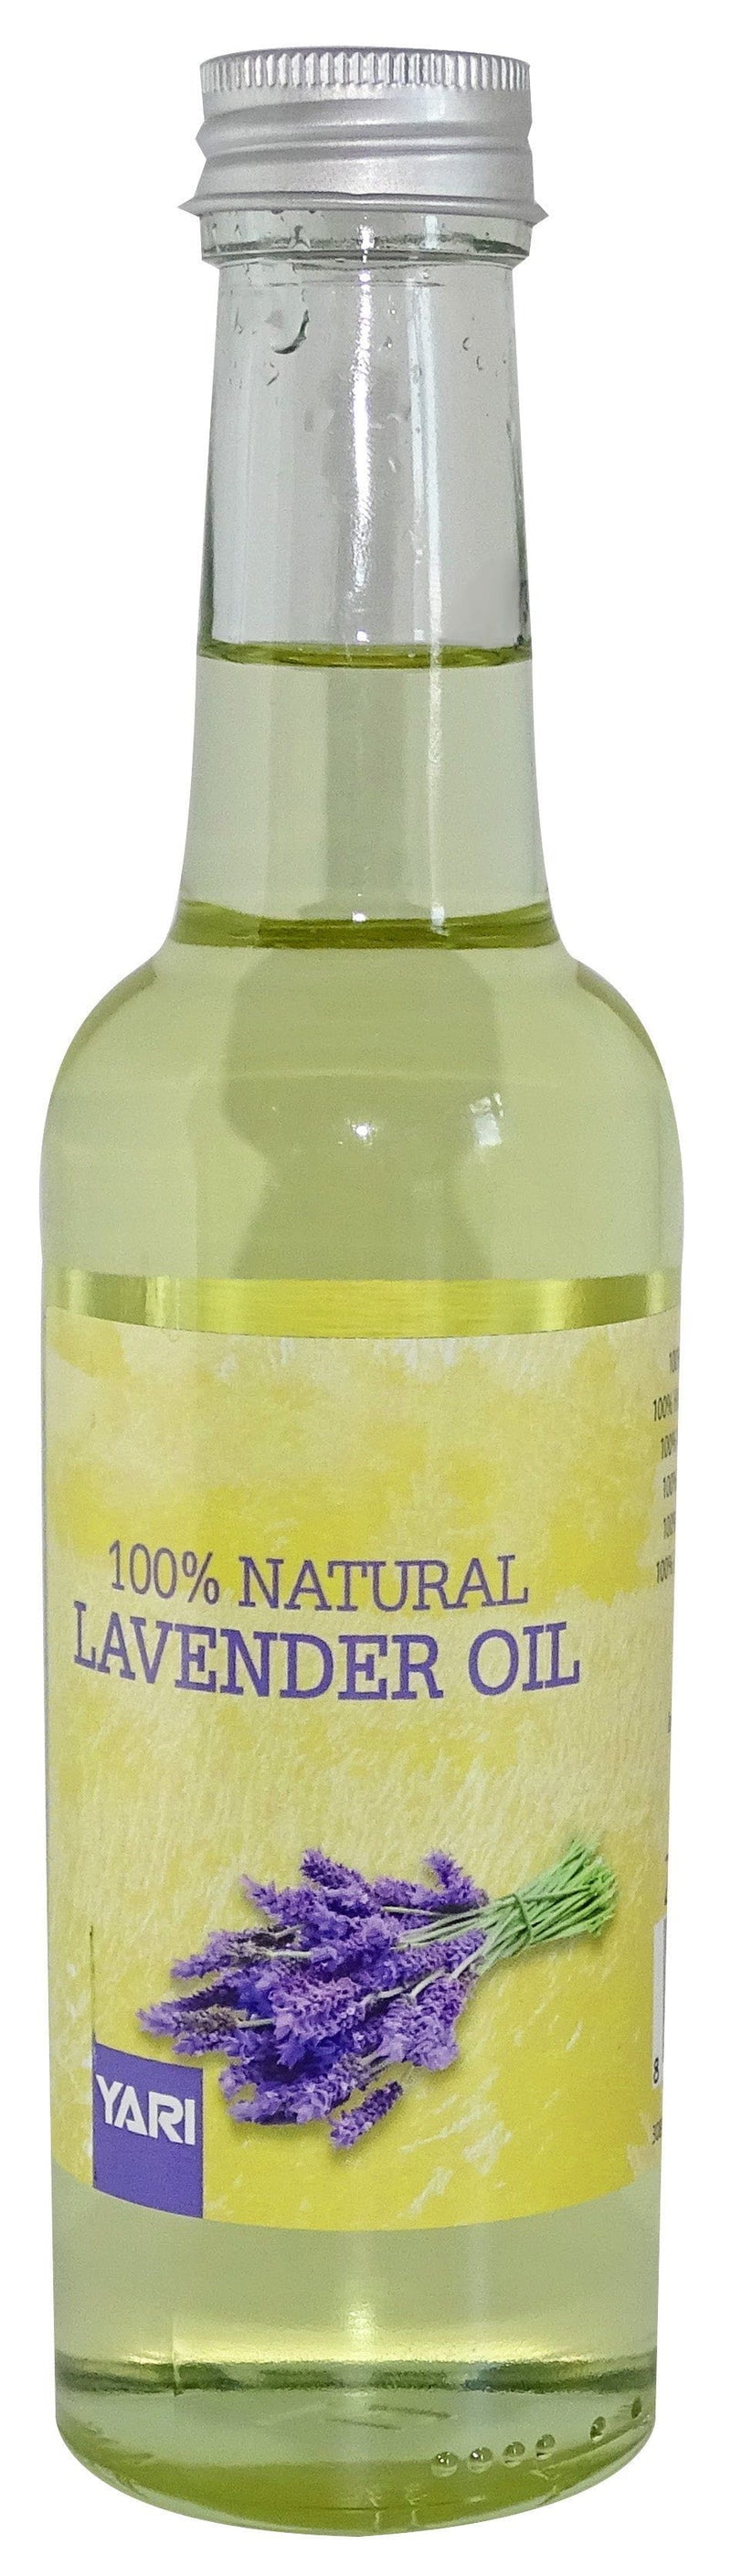 Yari Yari 100% Natural Lavender Oil 250ml